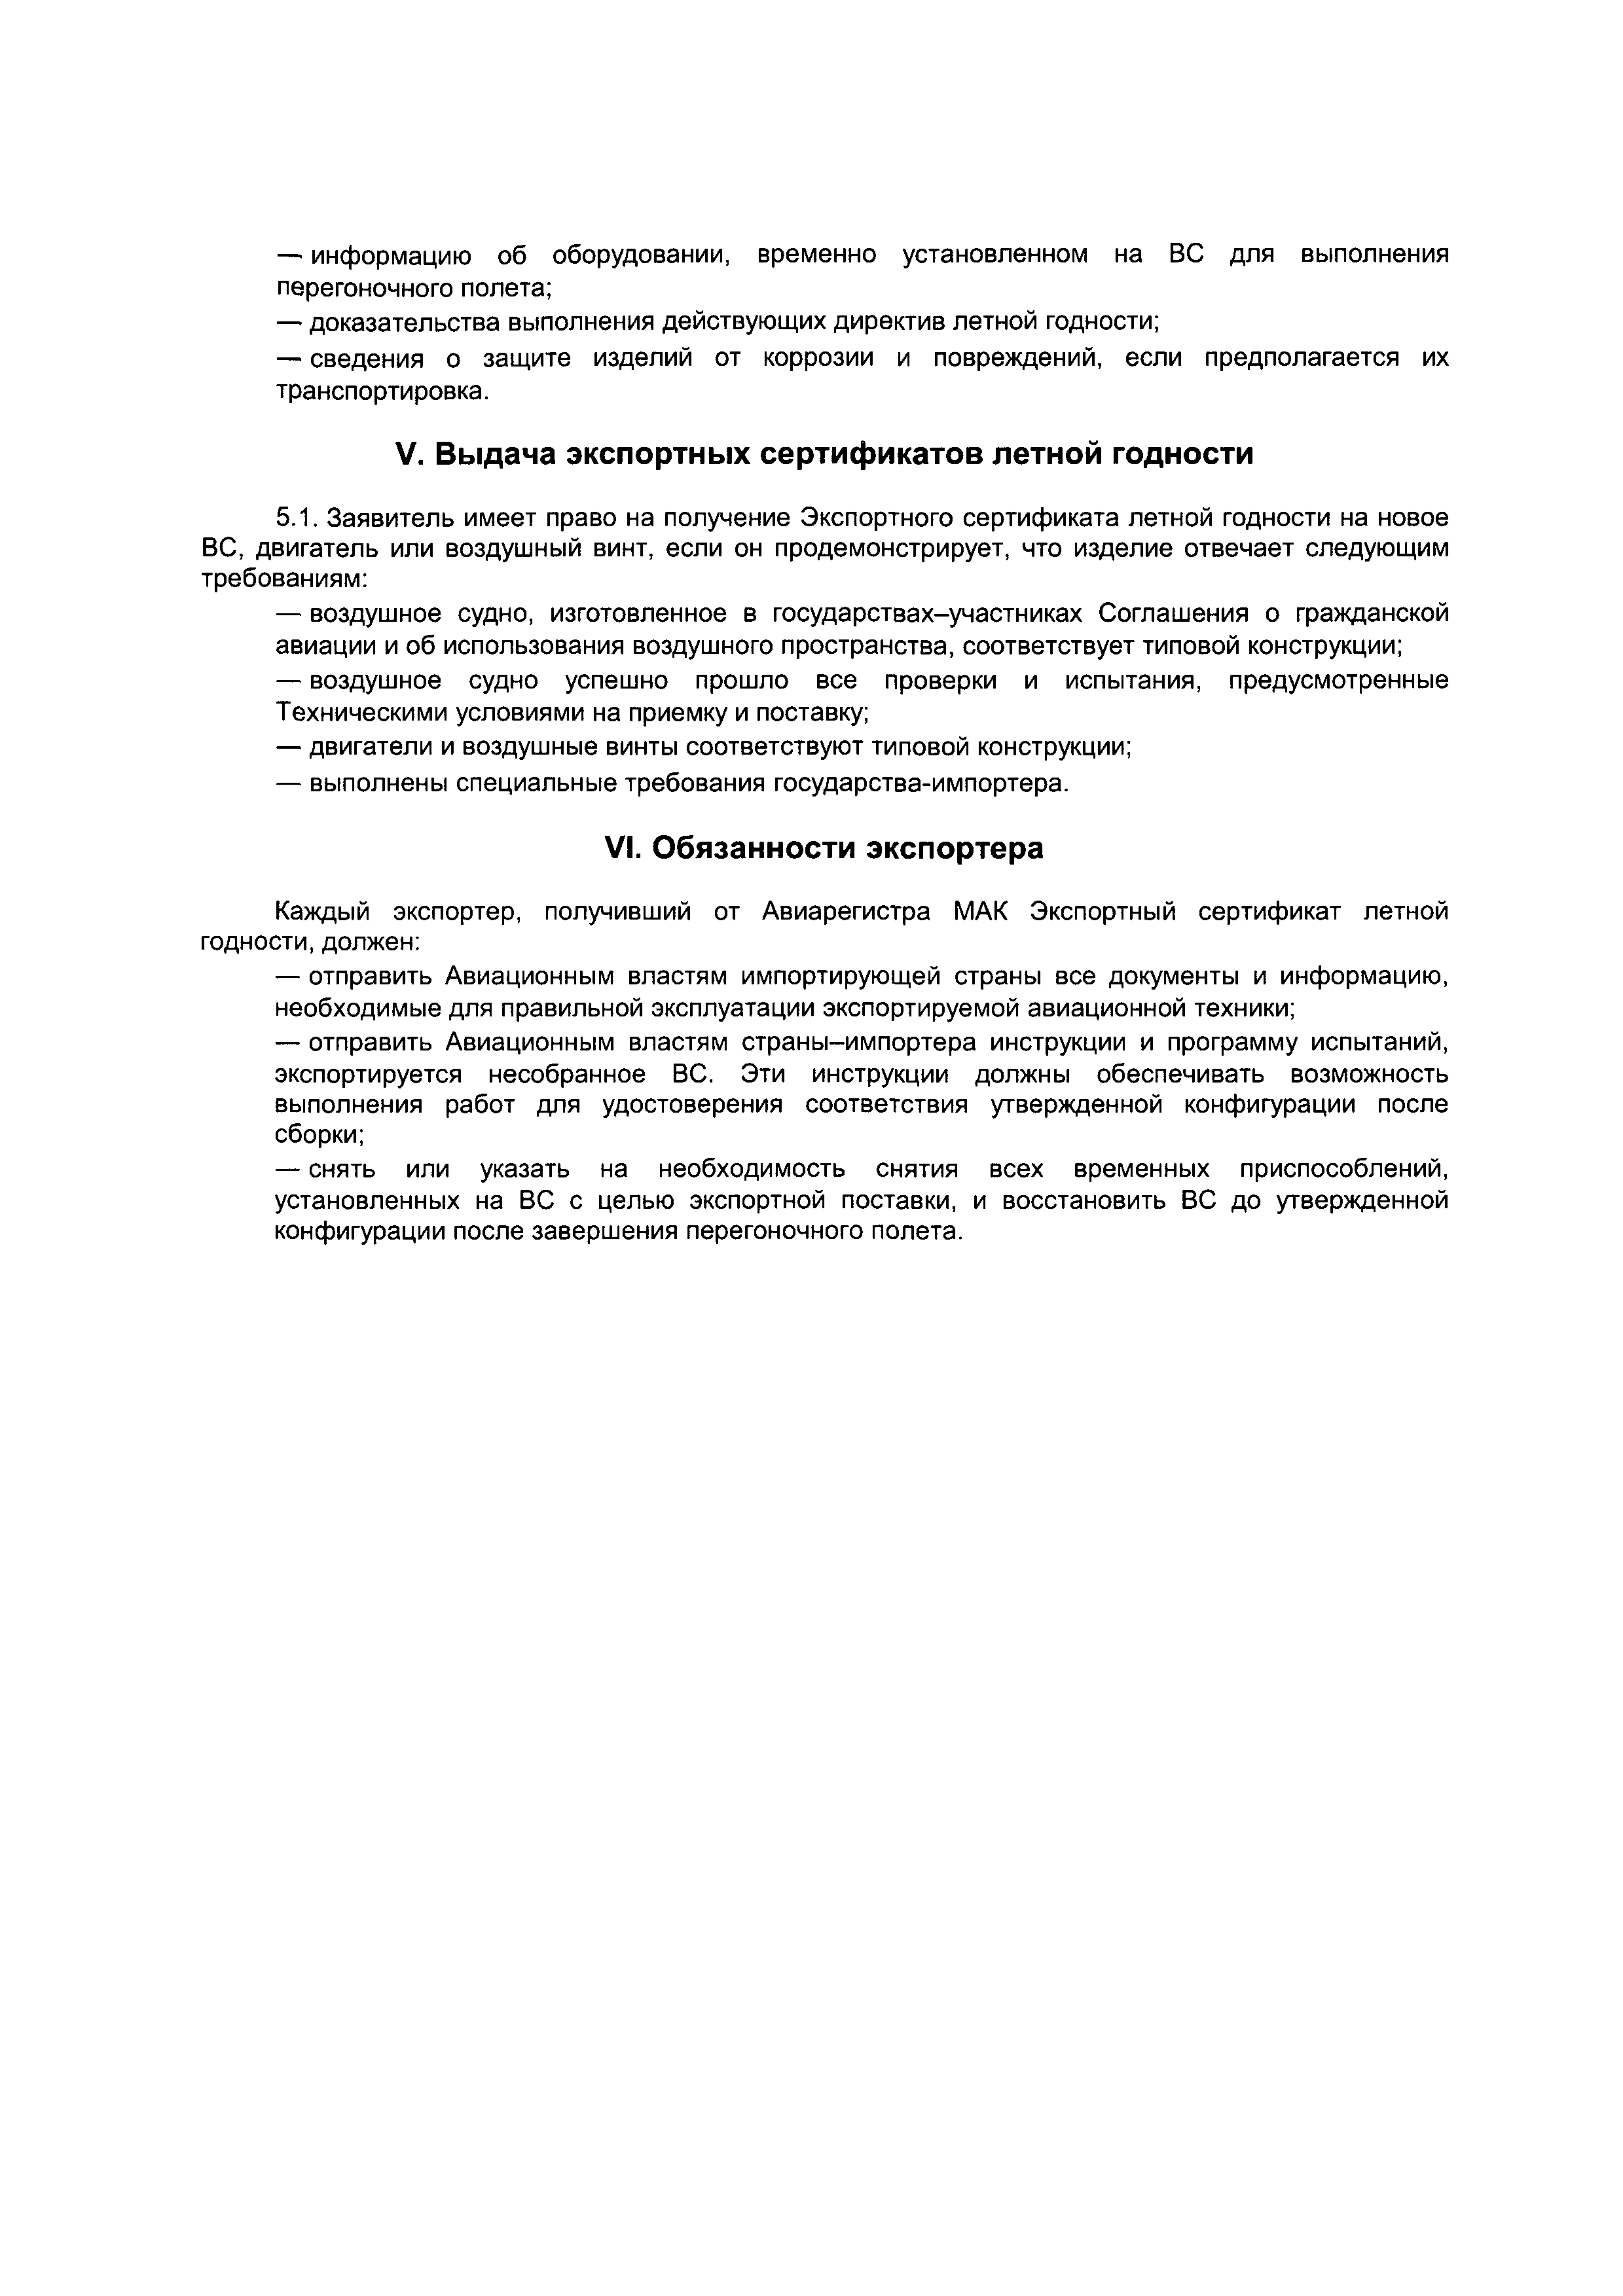 Директивное письмо 6-95/2001